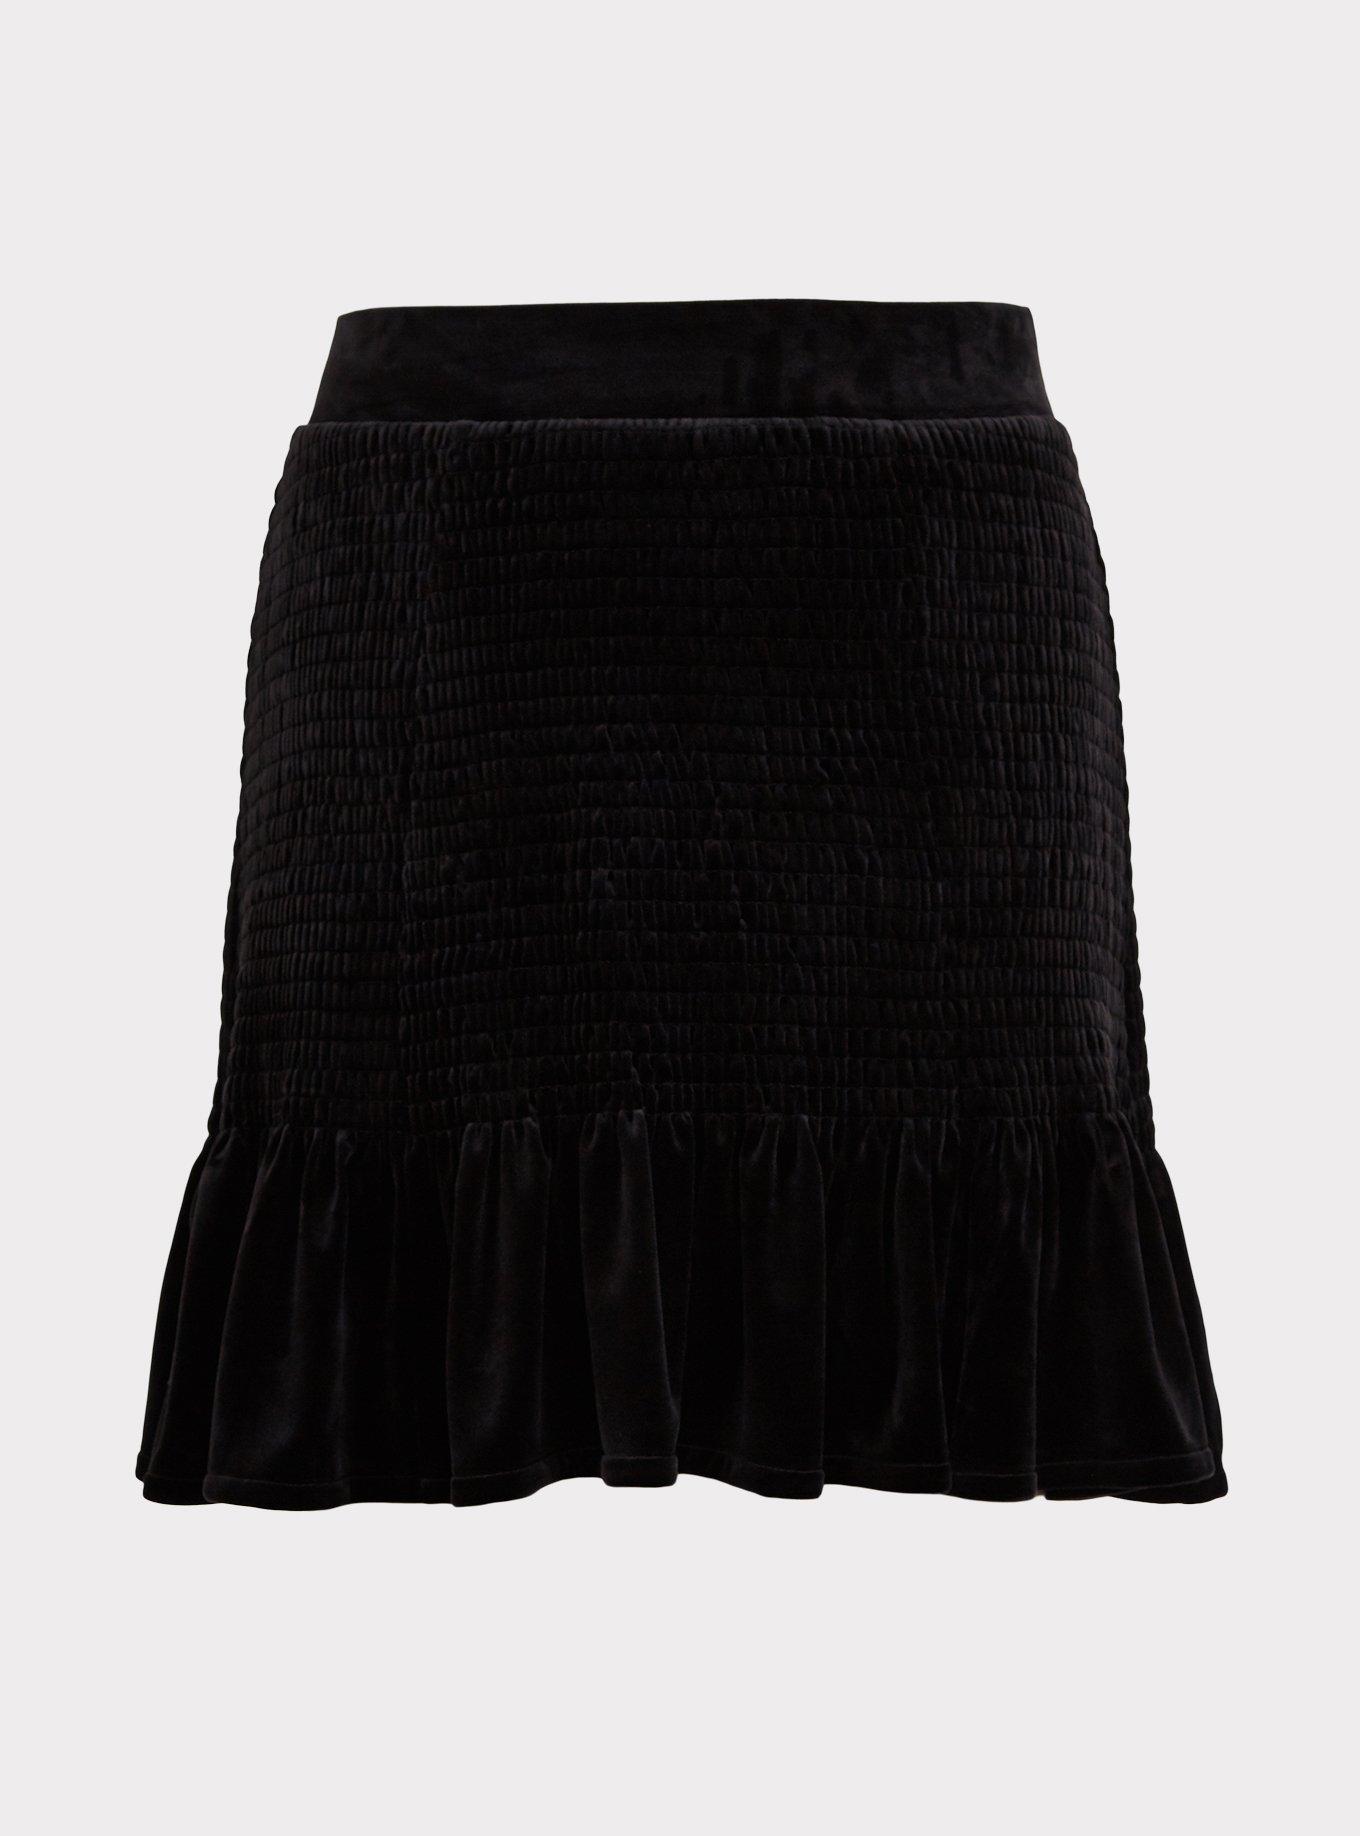 Plus Size - Black Velvet Smocked Ruffle Mini Skirt - Torrid